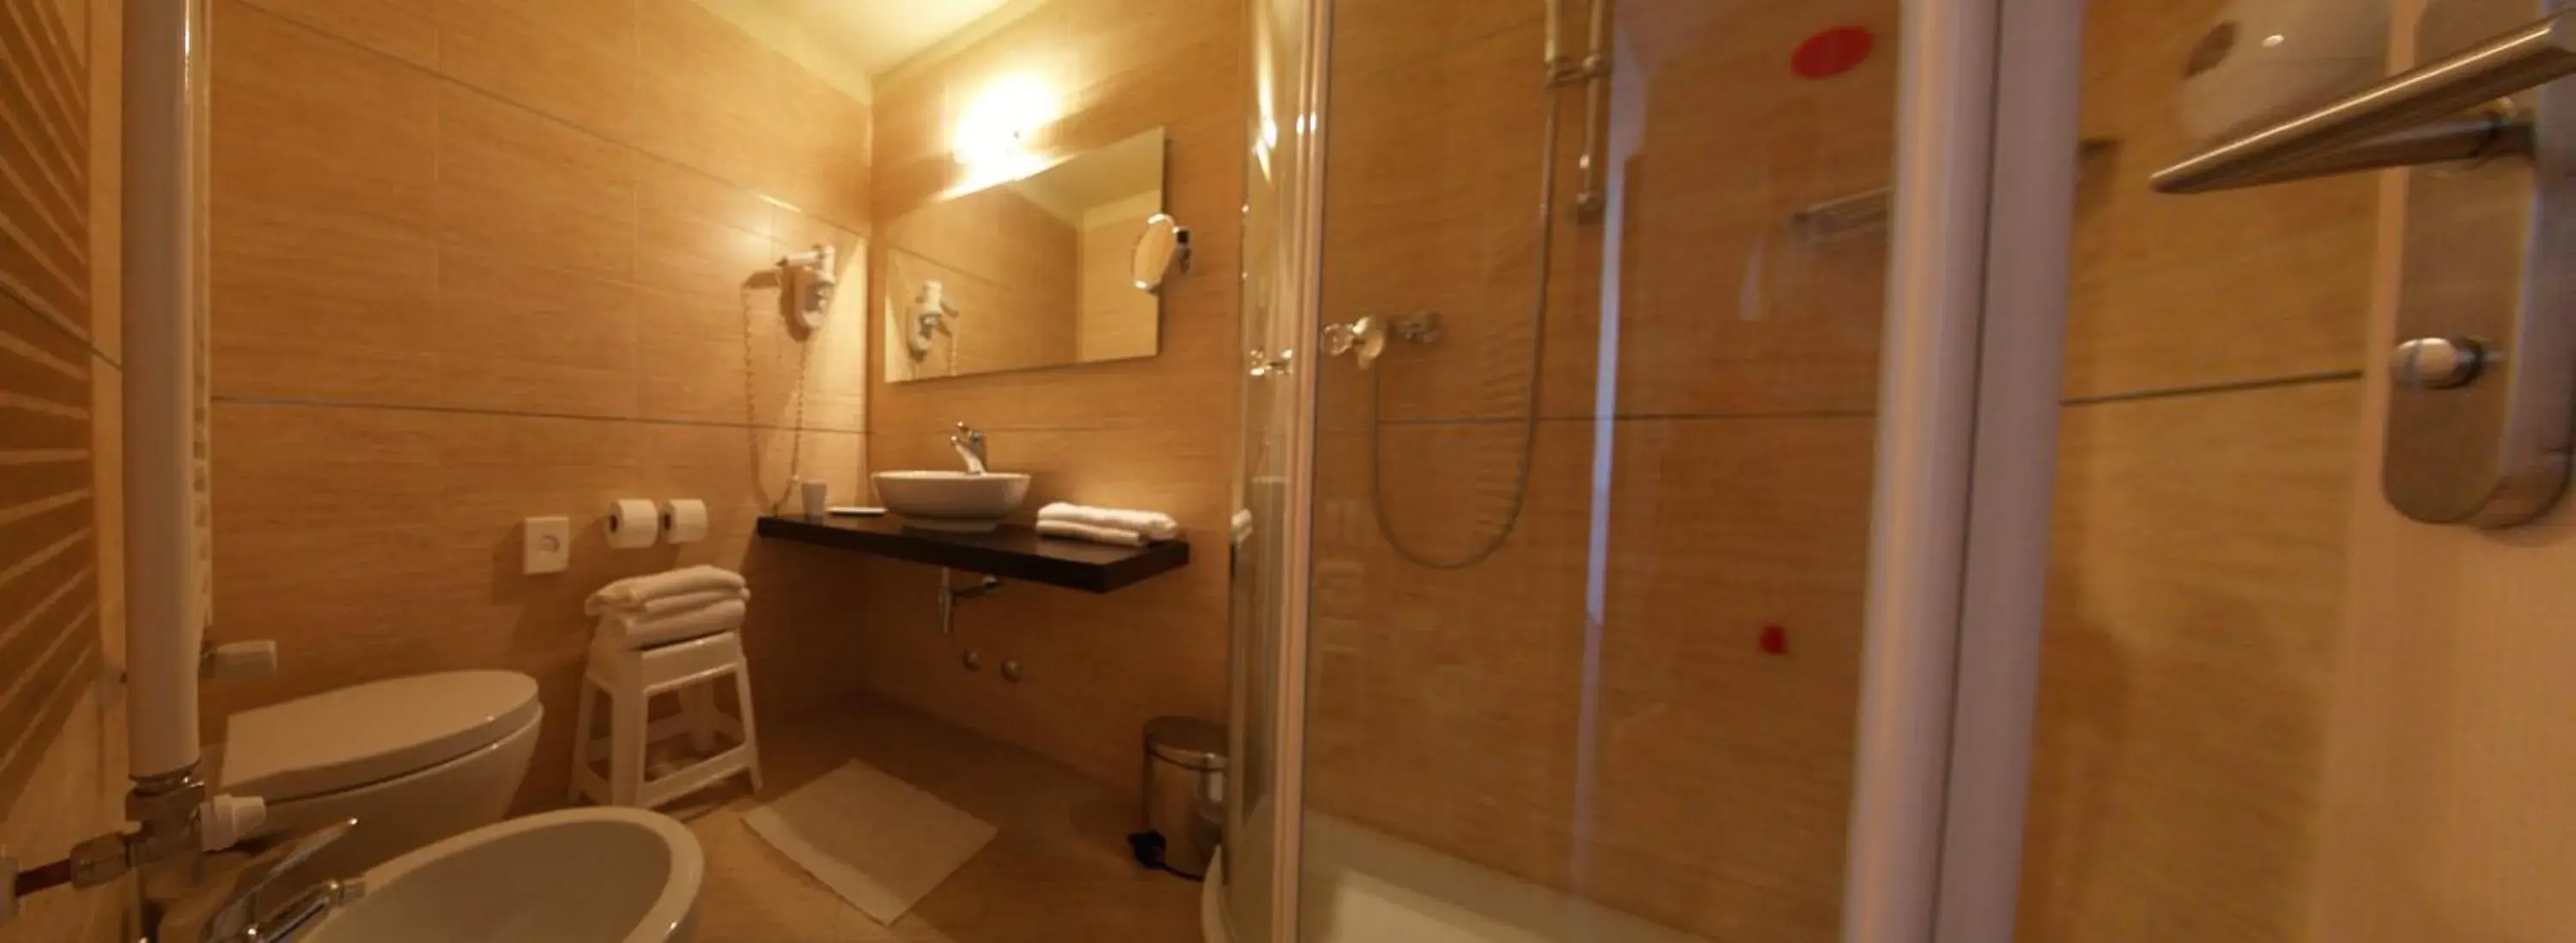 Shower, Bathroom in Hotel Villa Smeralda